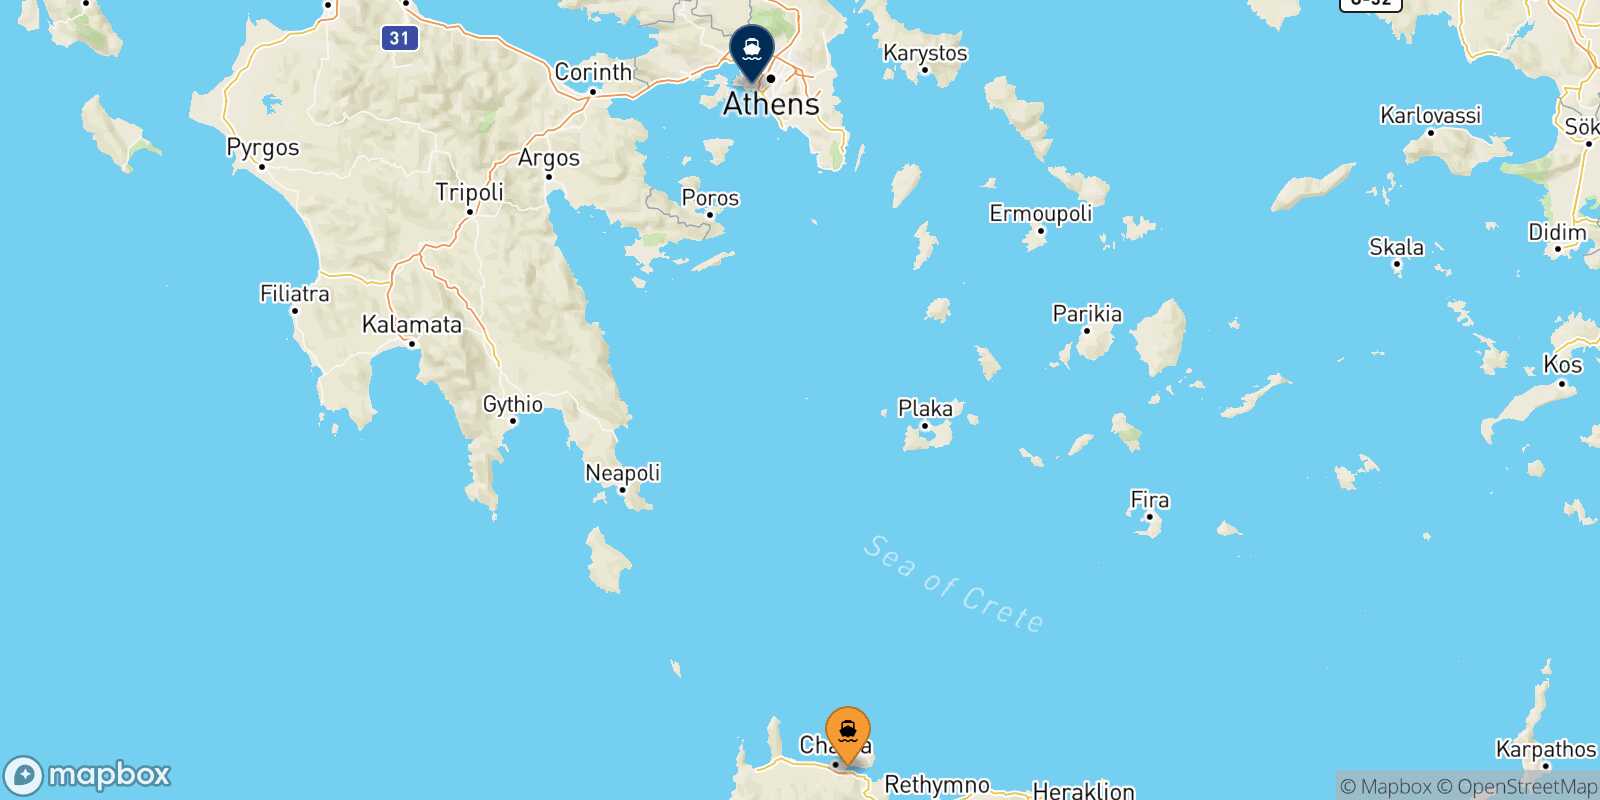 Chania Piraeus route map